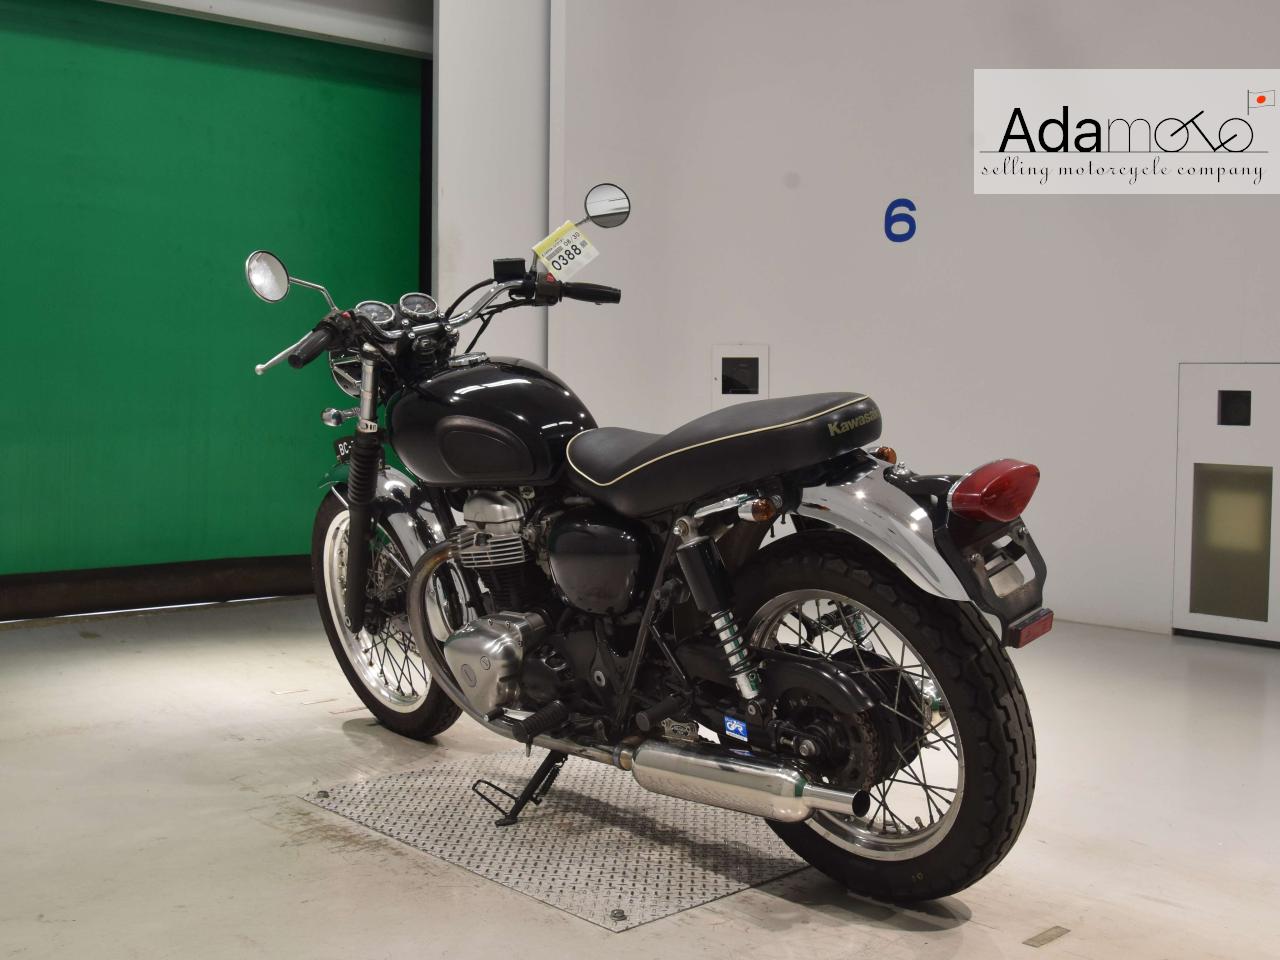 Kawasaki W400 - Adamoto - Motorcycles from Japan